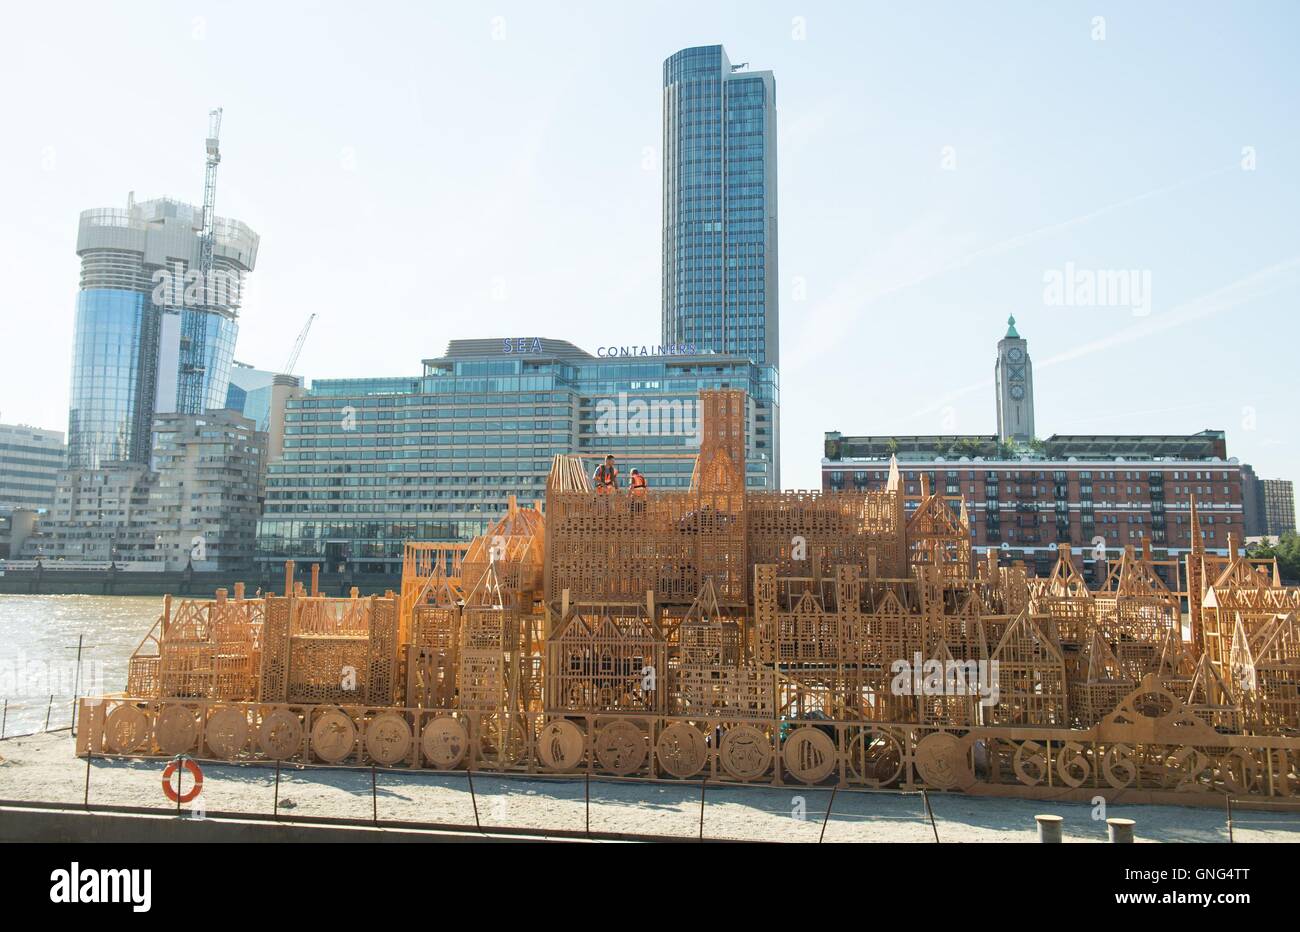 Travailleurs s'appliquent la touche finale à un 120 mètres de long modèle de London's Sky line au 17e siècle à Victoria Embankment, London, qui fait partie de la London's Burning festival pour marquer le 350e anniversaire du Grand Incendie de Londres et ses conséquences. Banque D'Images